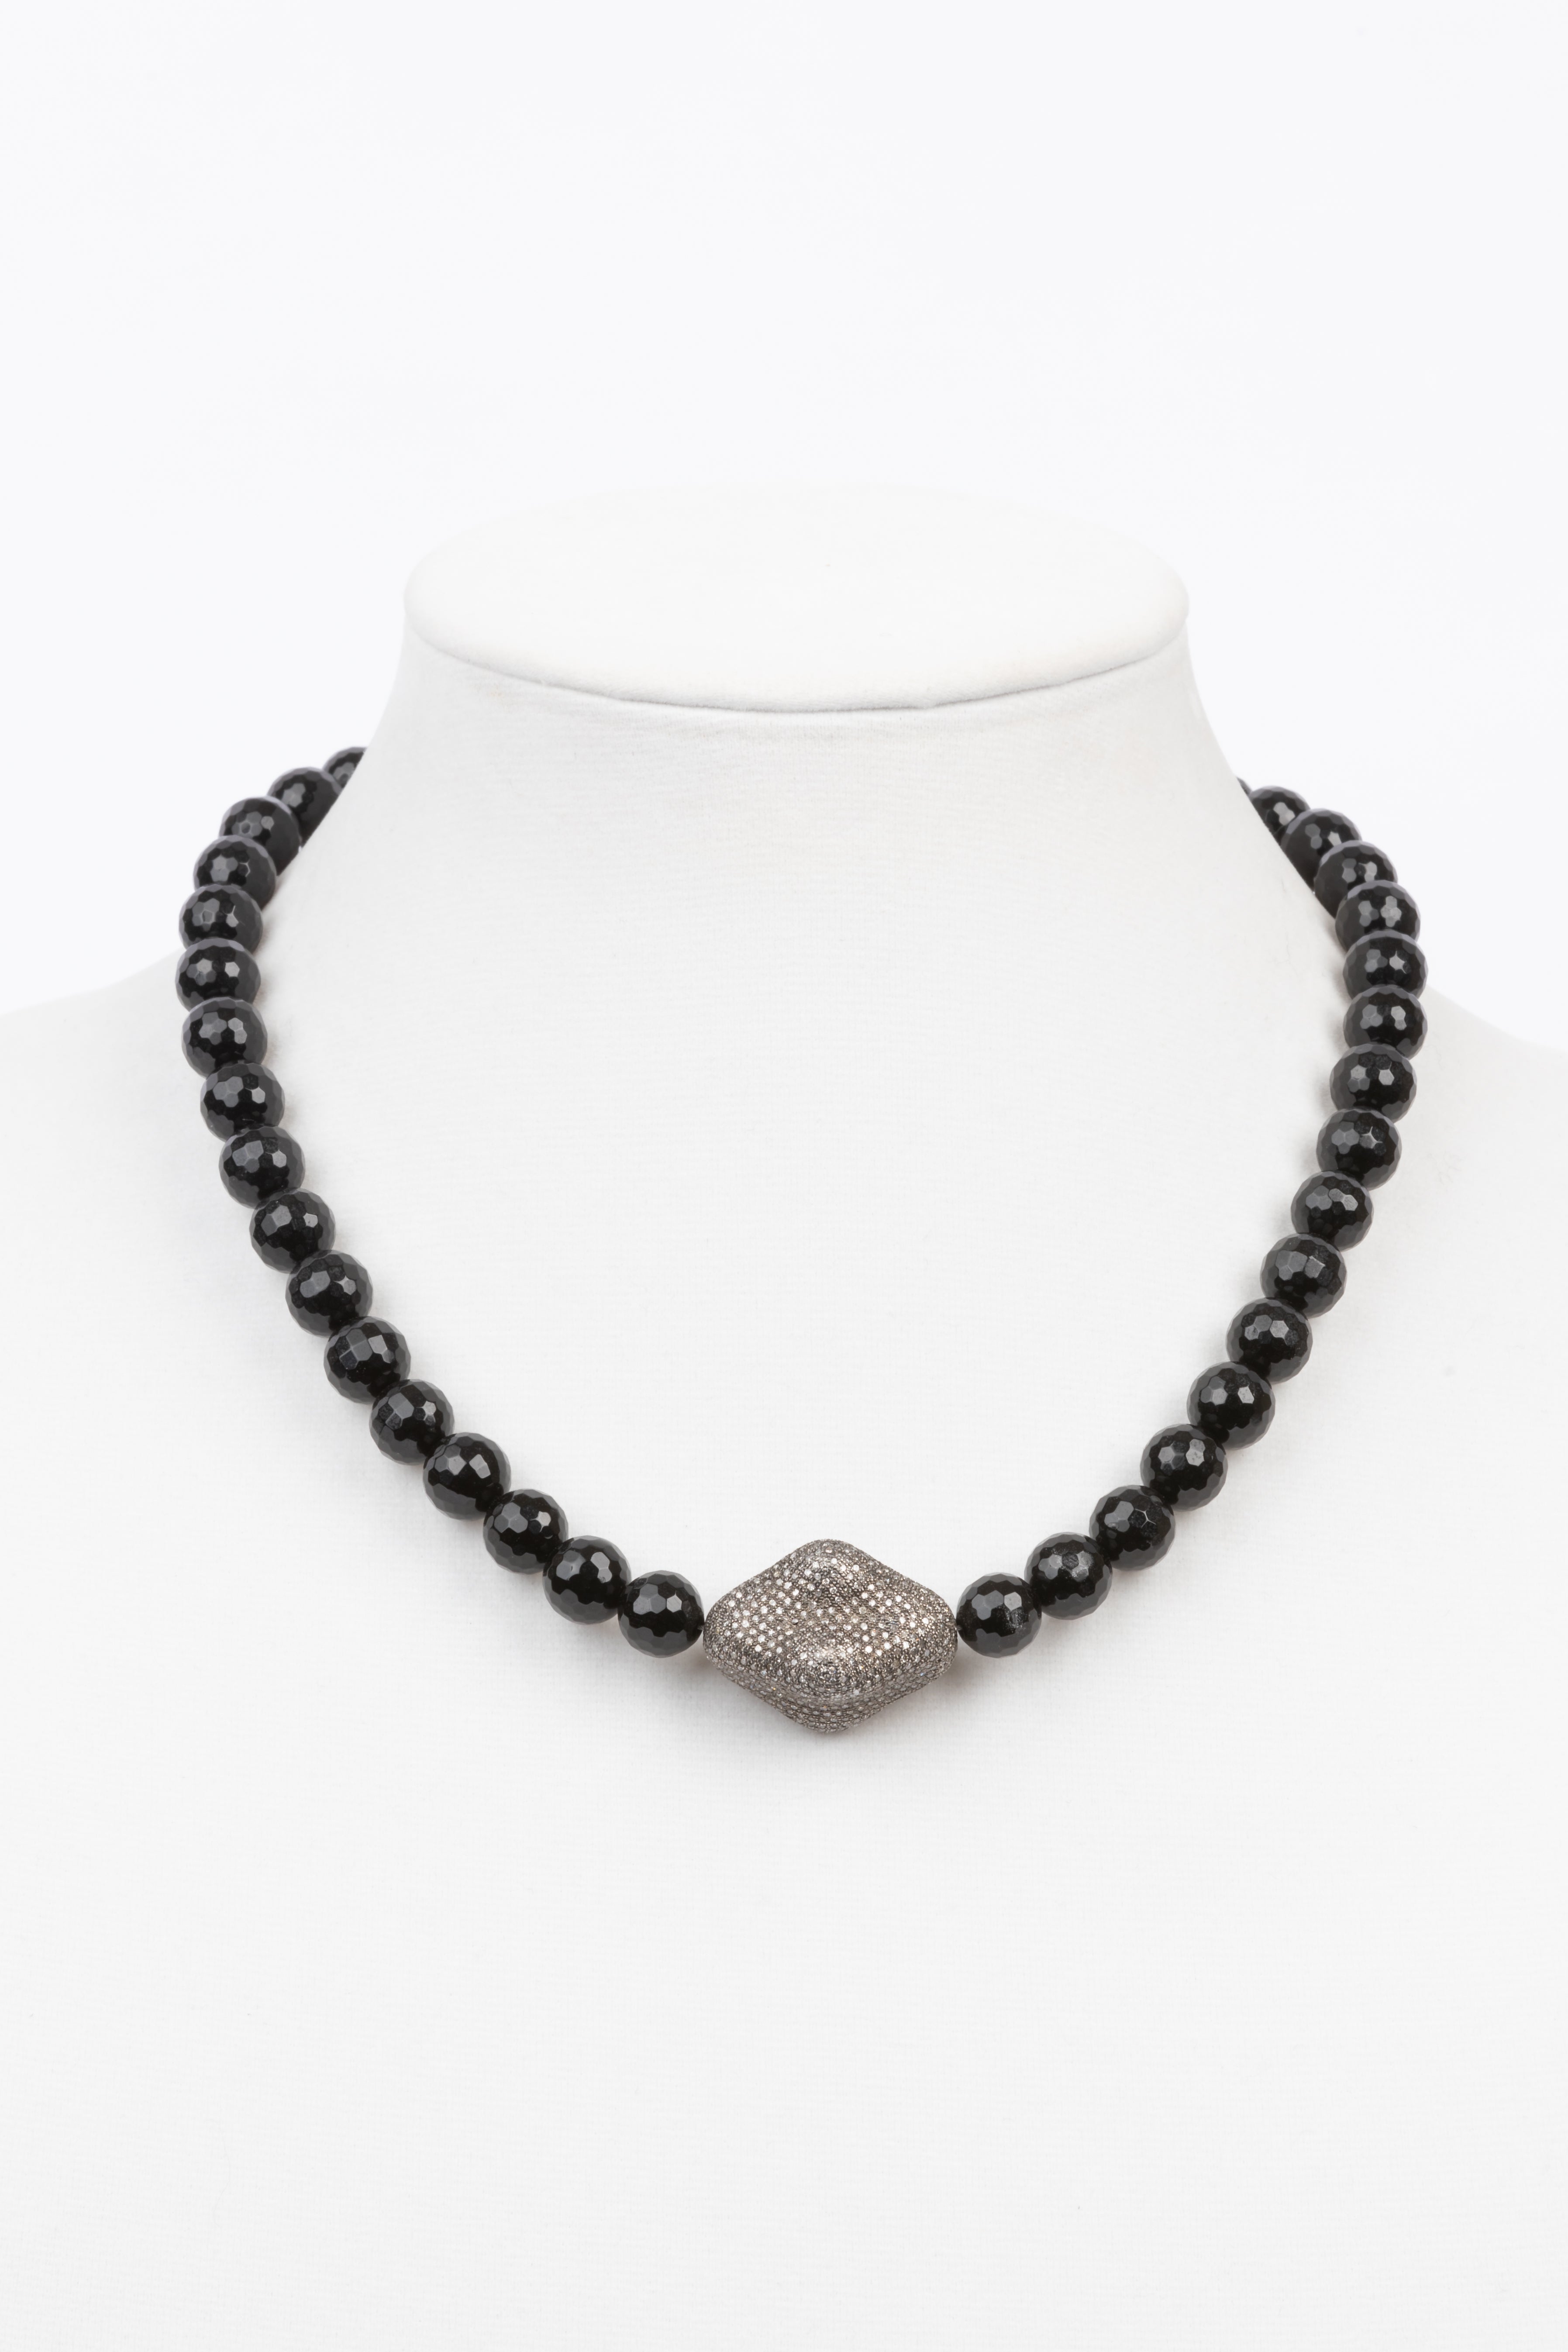 Pave Diamond, Black Onyx Necklace